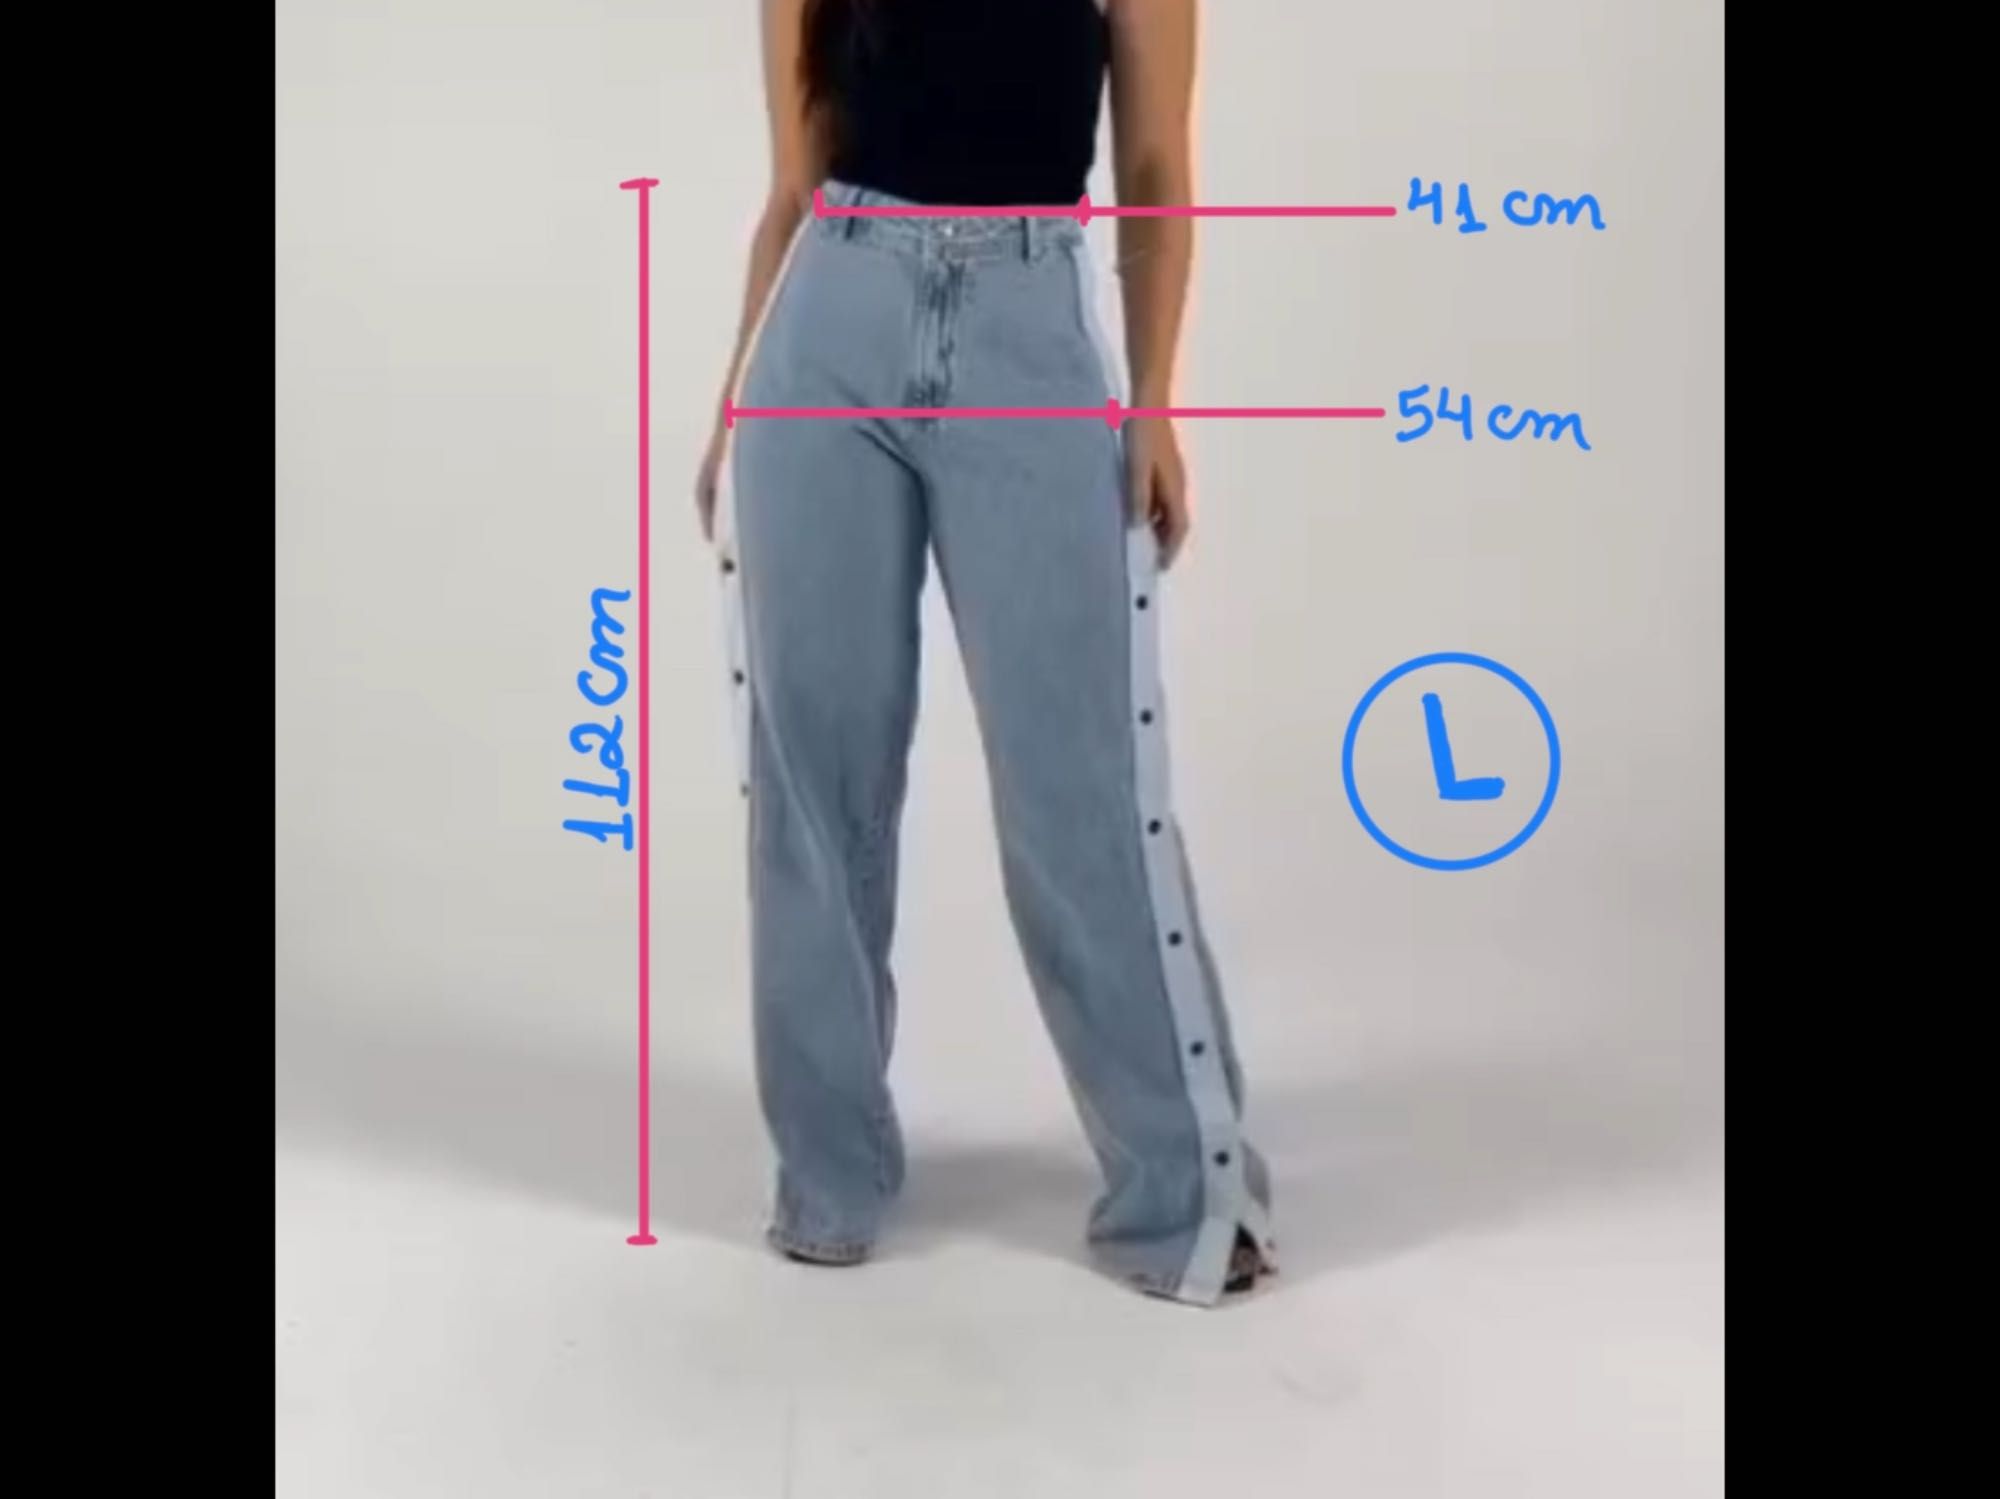 Calças novas Jeans Wid Leg modelagem brasileira M, L, e XL